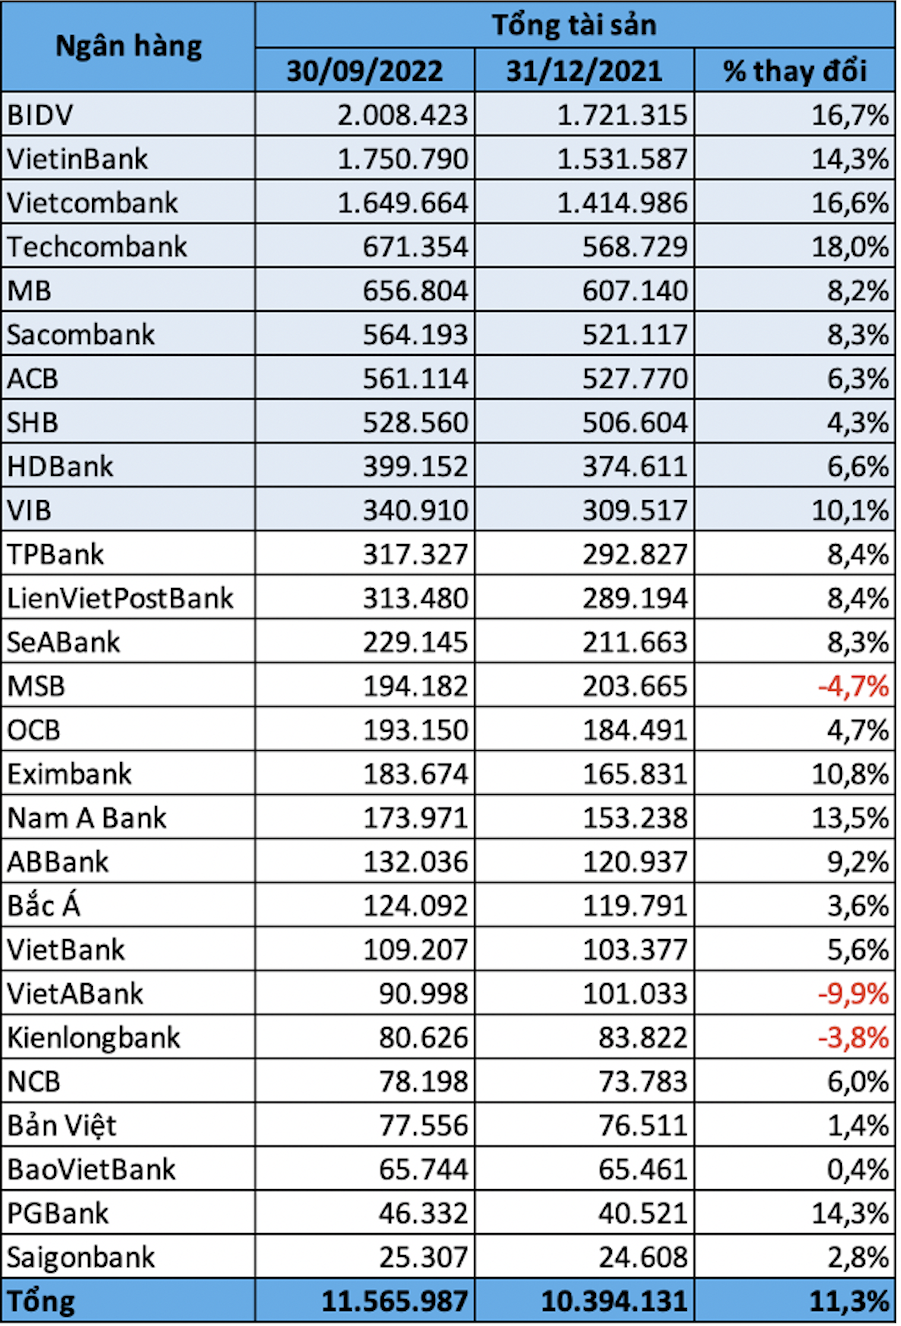 Tổng tài sản các ngân hàng cuối quý III/2022 (Đv: tỷ đồng)